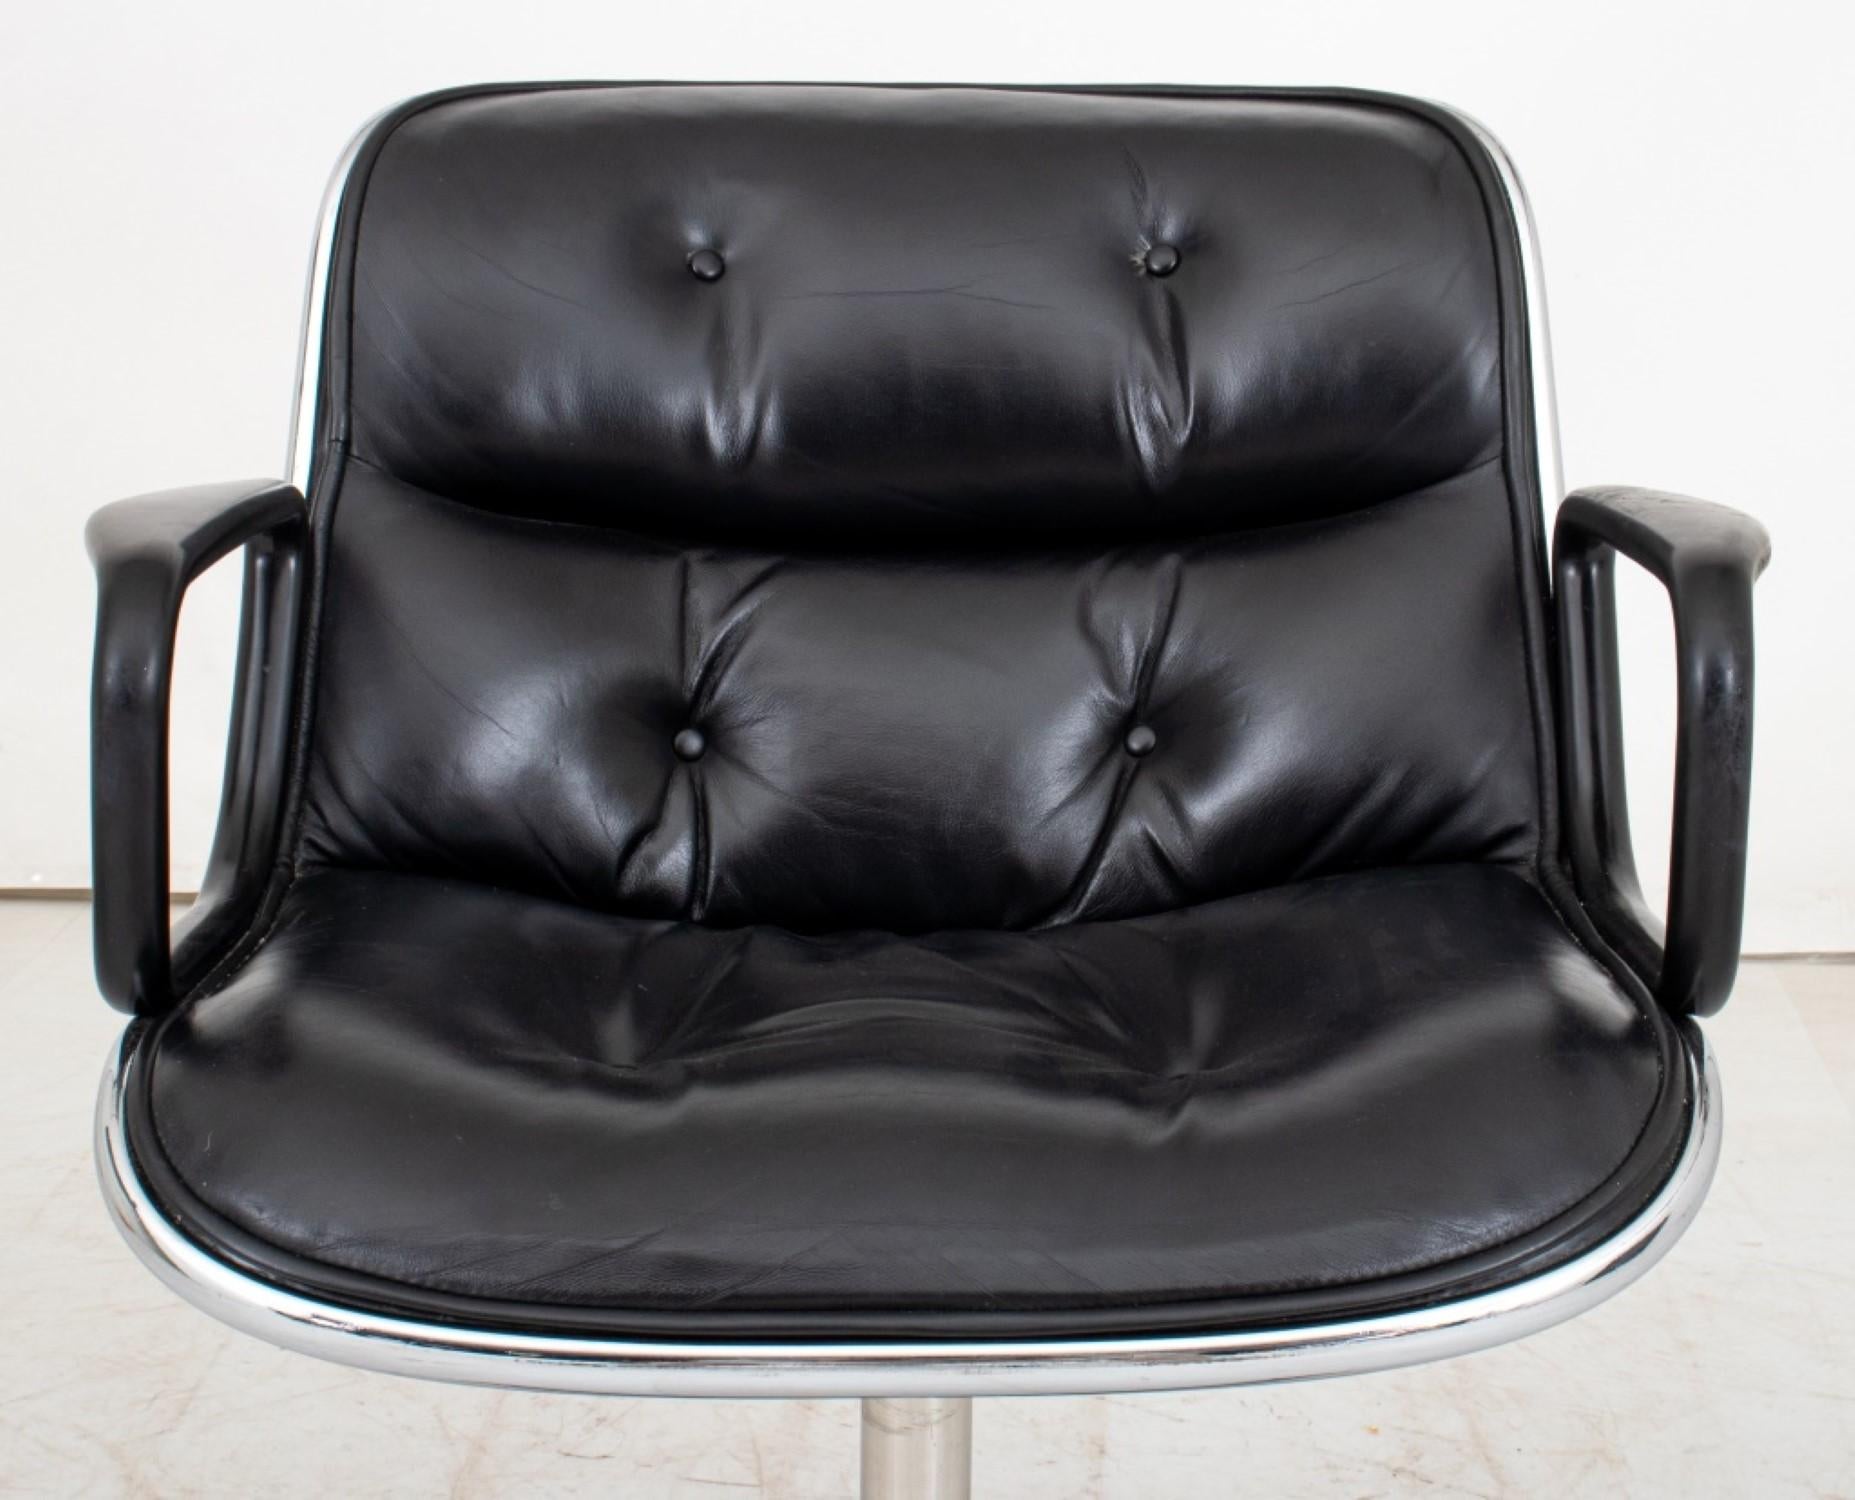 harles Pollock Bürostuhl für Knoll International (1963)

Design/One: Sitz und Rückenlehne aus schwarzem Leder mit Knopftuft auf einem verchromten Fuß mit vier Rollen.

Abmessungen: 32,25